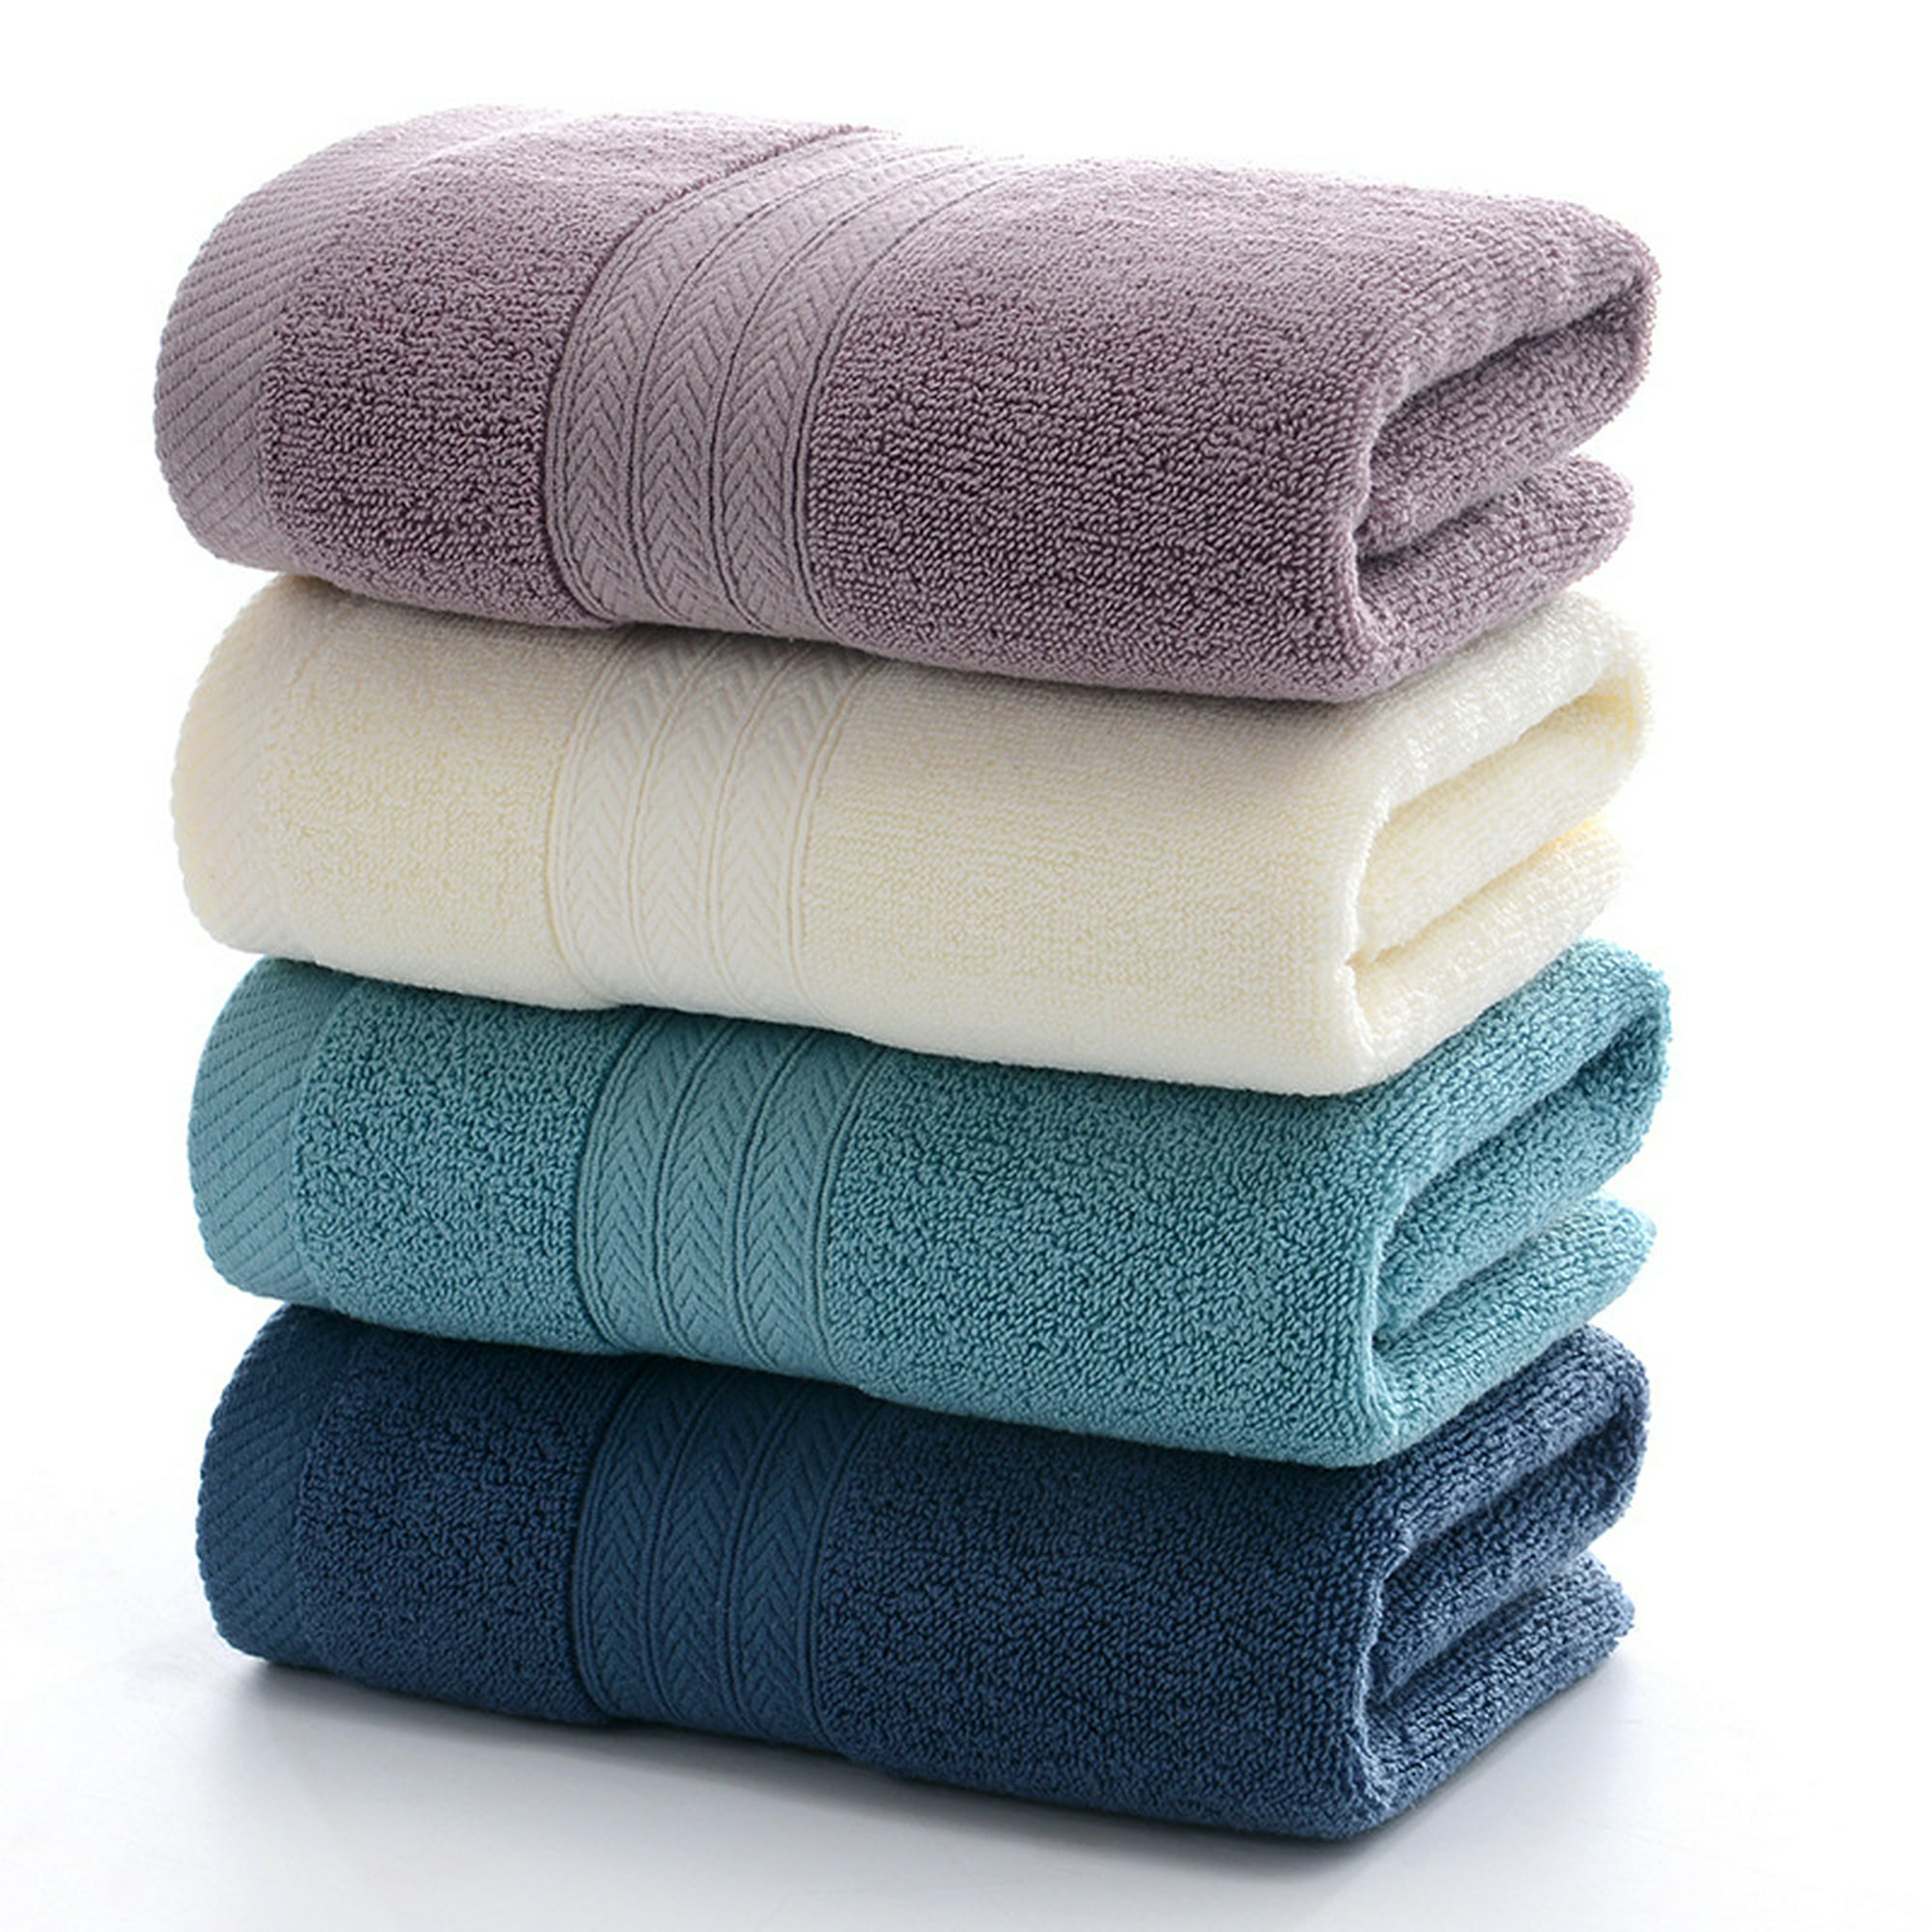  SUPERIOR - Juego de 8 toallas de mano de algodón egipcio,  toallas básicas para secado rápido, toallas pequeñas absorbentes, faciales,  spa, cocina, artículos esenciales de baño, apartamento, baño de invitados,  suave